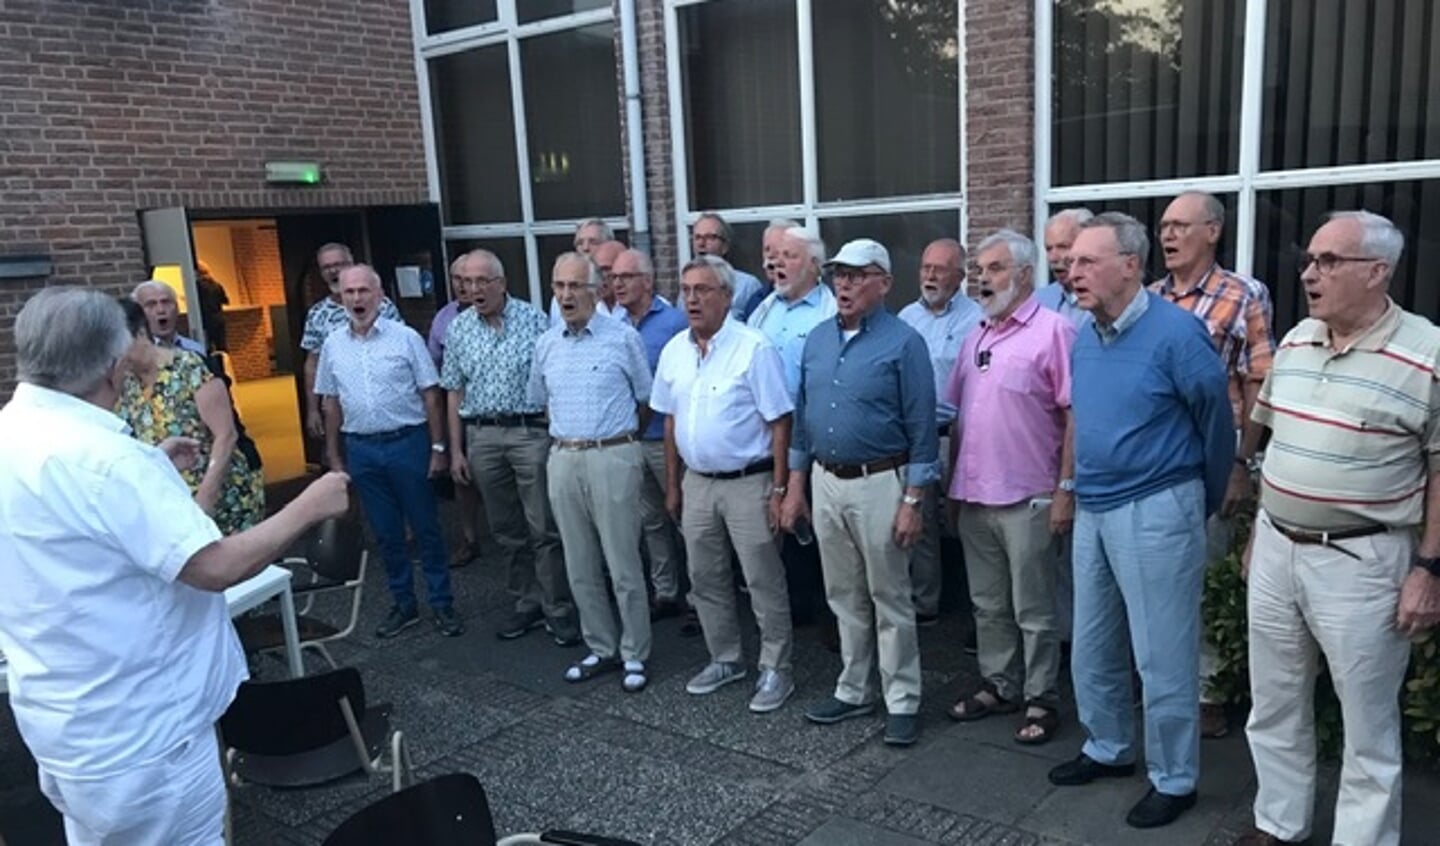 Onder leiding van dirigent Piet van der Sanden zingt het koor.